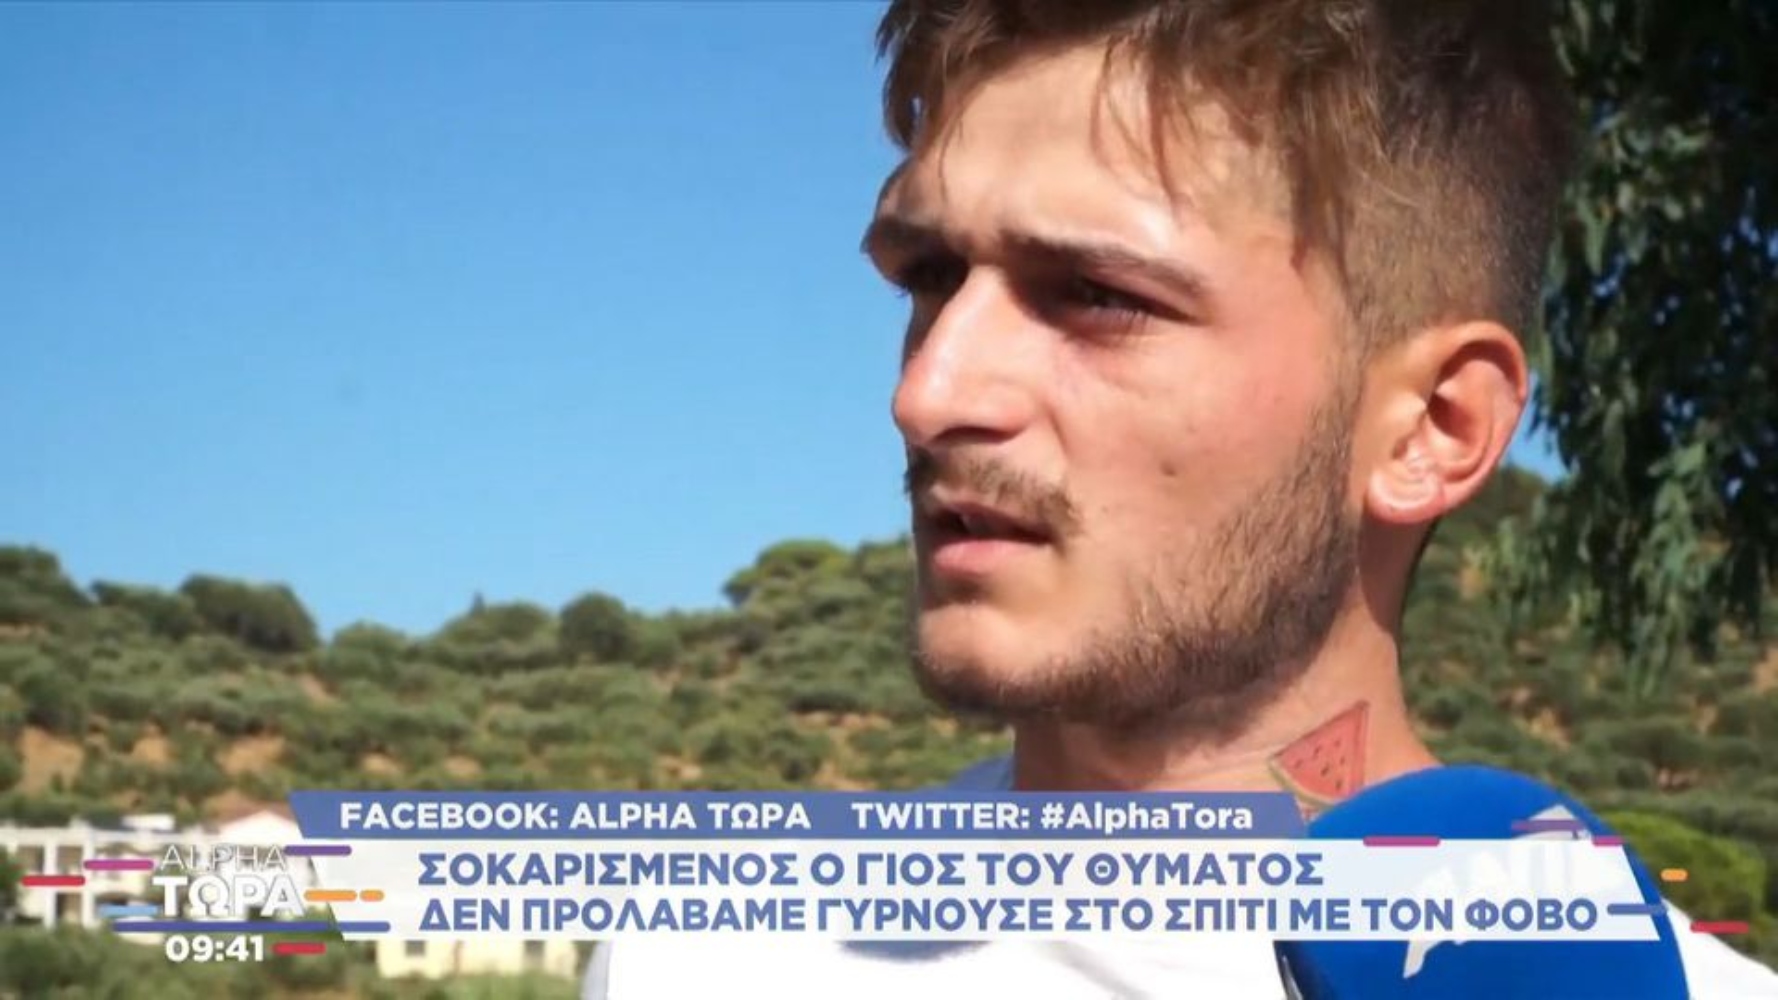 Ζάκυνθος: «Η μάνα μου είχε φάει ξύλο, η αστυνομία την άφησε αβοήθητη», λέει ο γιος